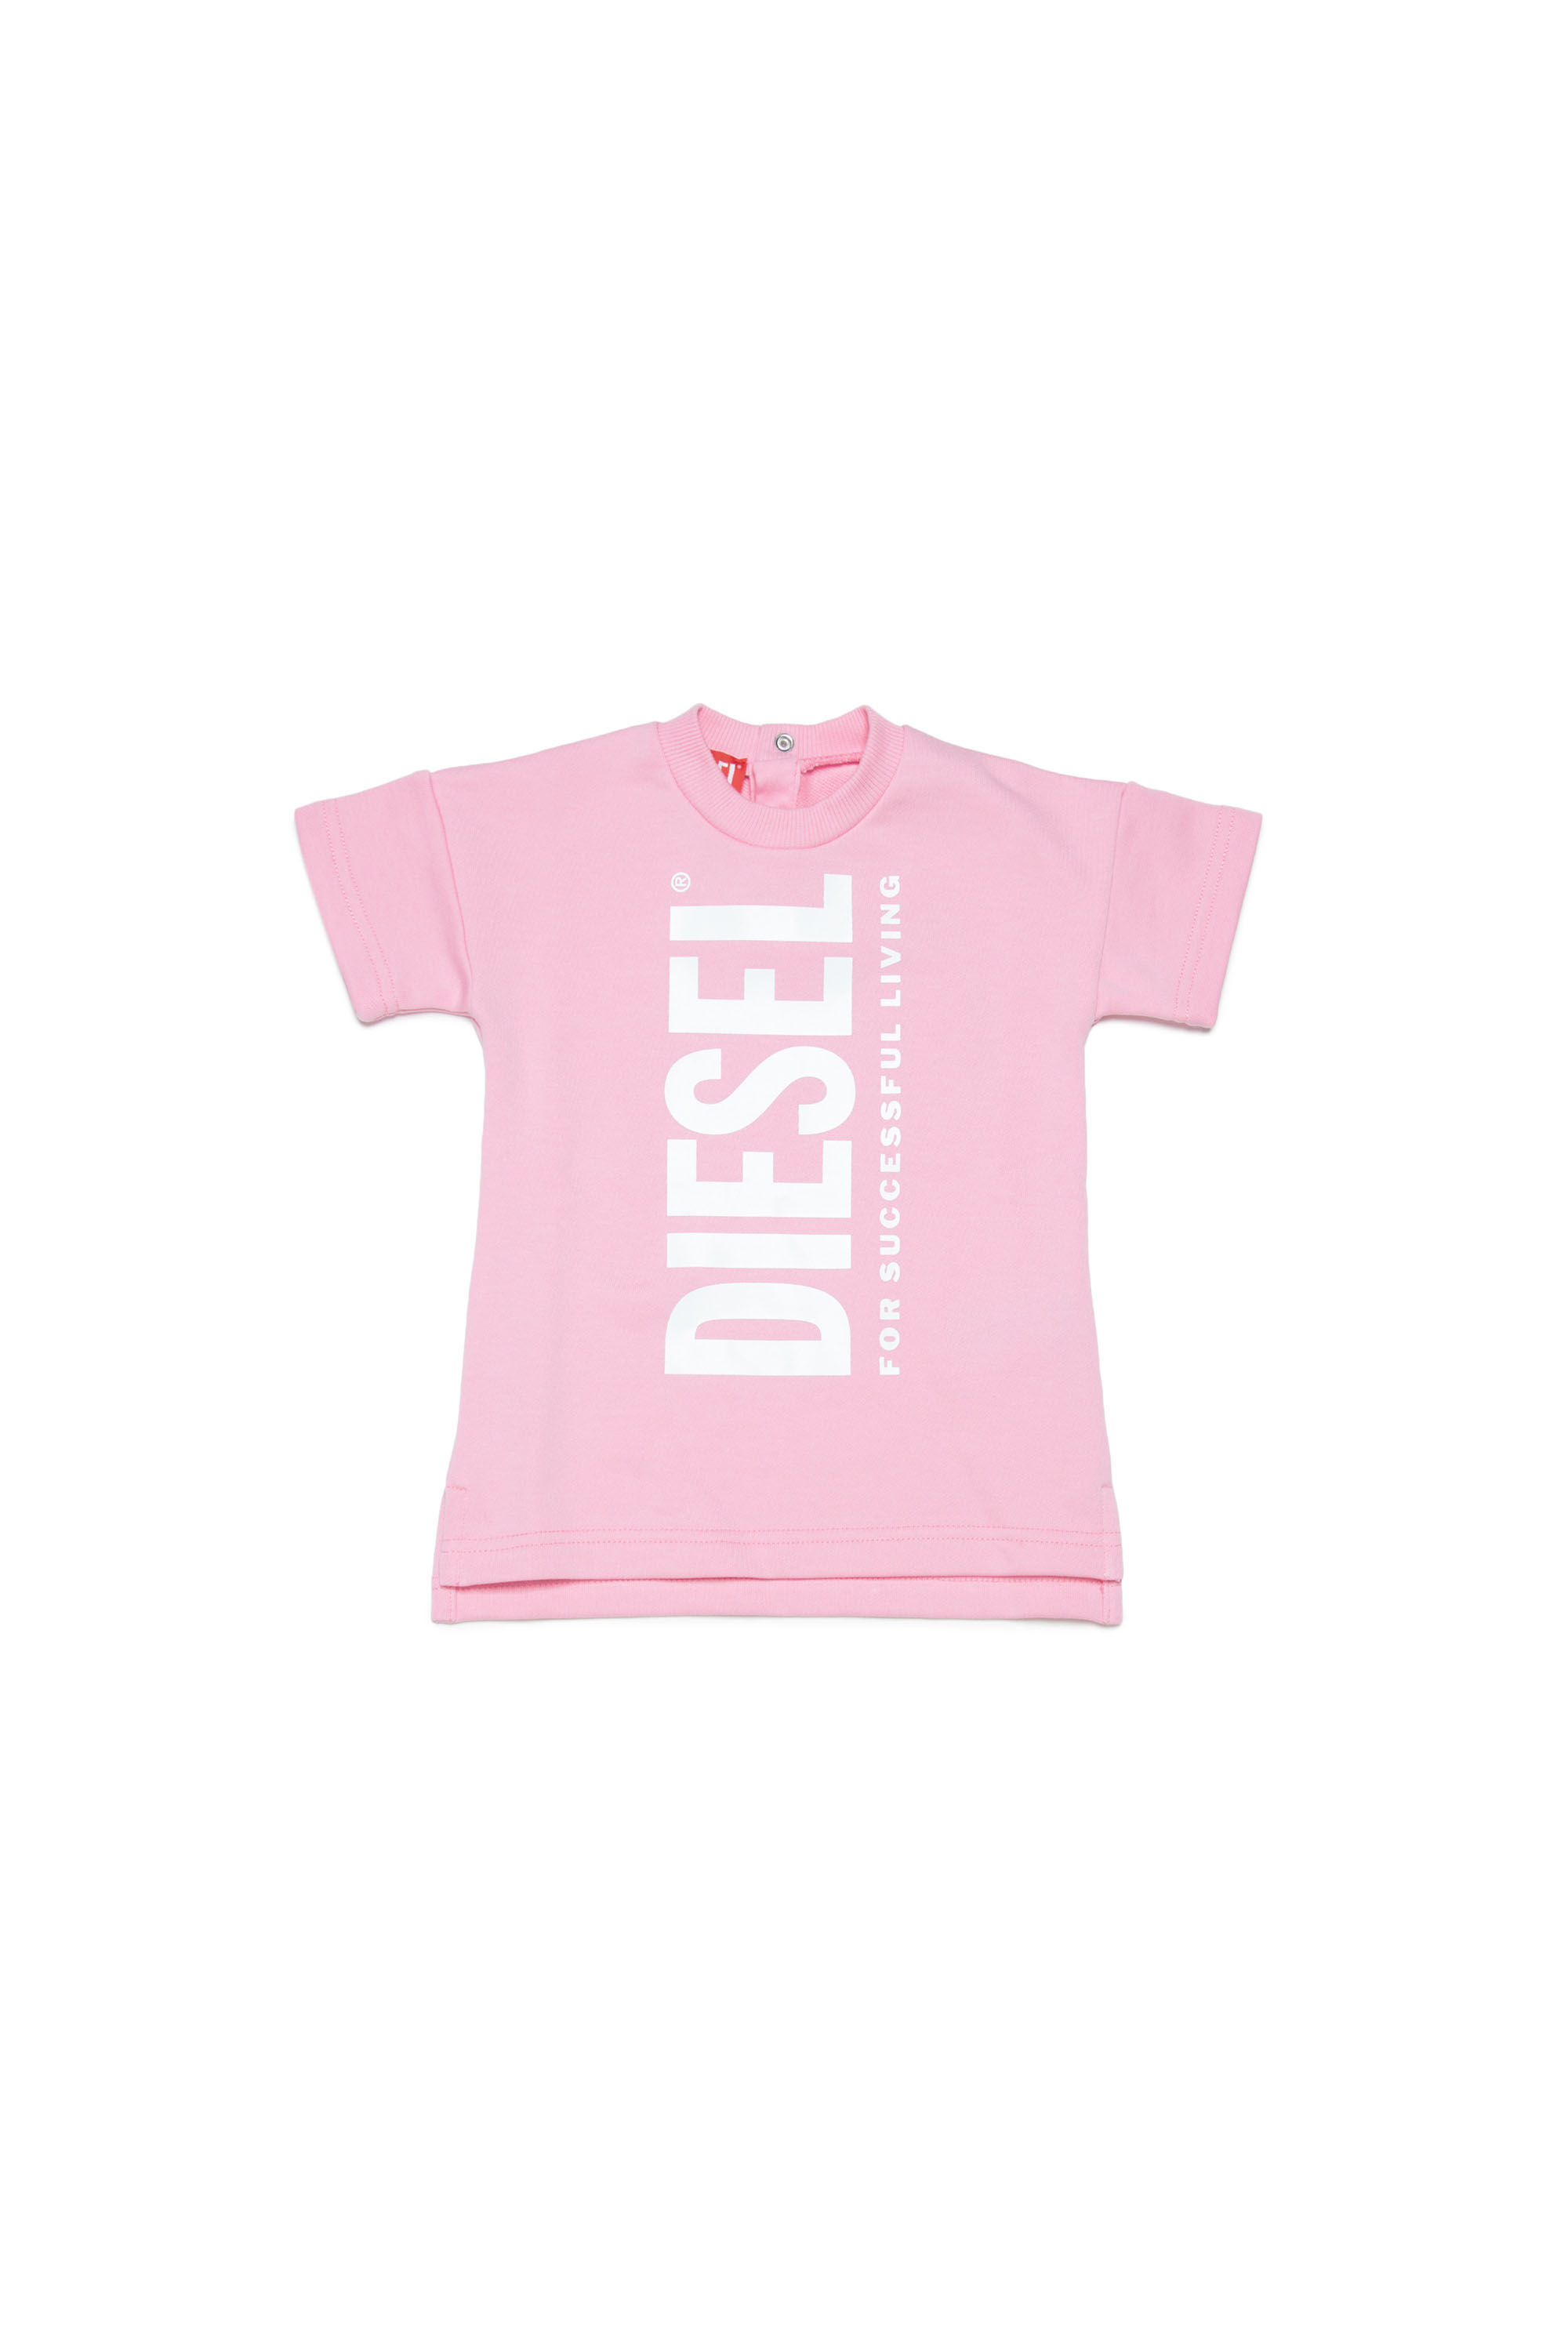 Diesel - DESLIB, Pink - Image 1